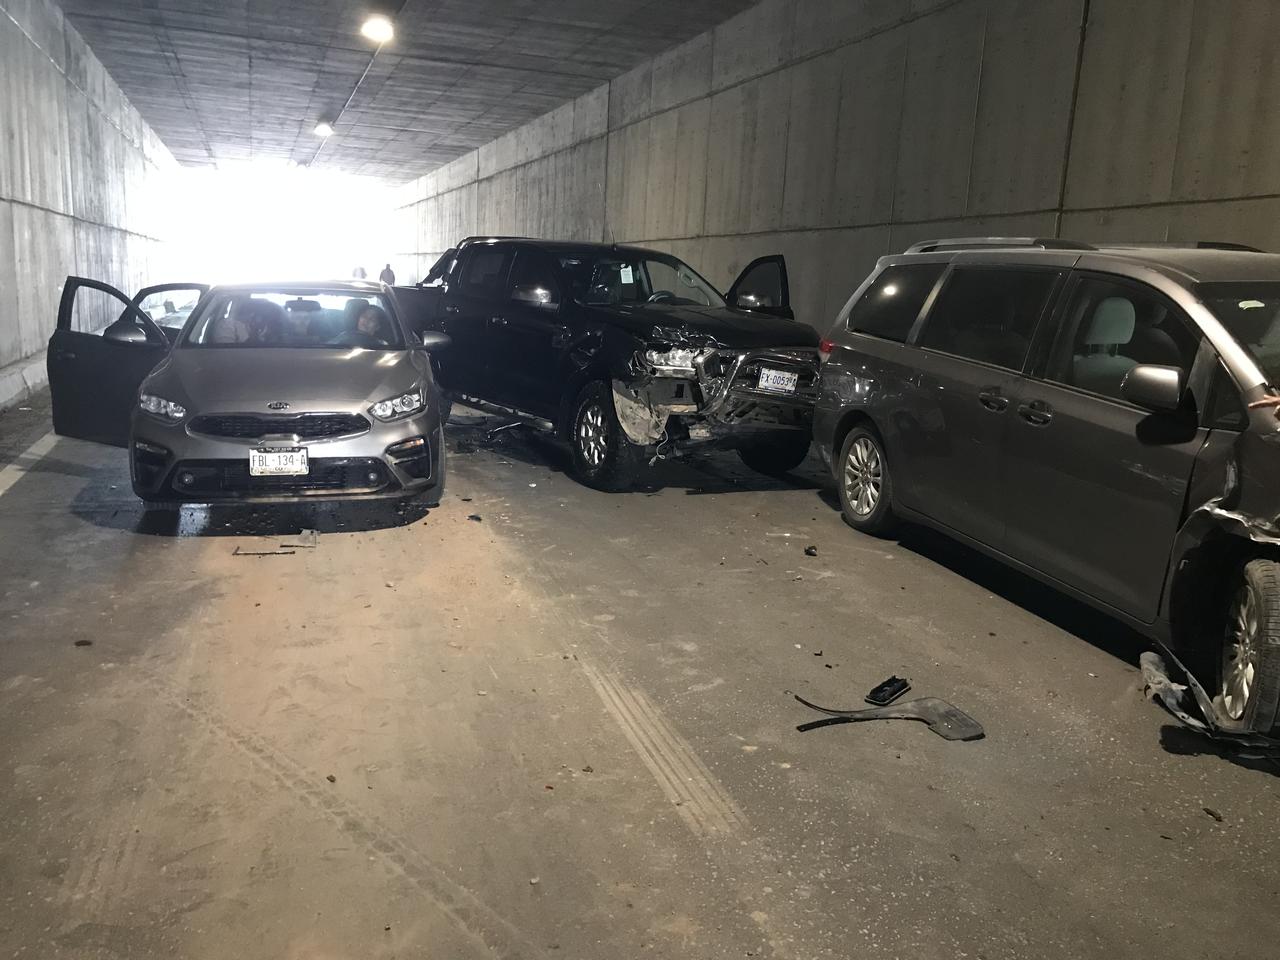 Este sábado se registró un choque múltiple en el interior del desnivel ubicado frente a la colonia Villa Florida de la ciudad de Torreón, tres vehículos se vieron involucrados en los hechos. (EL SIGLO DE TORREÓN)